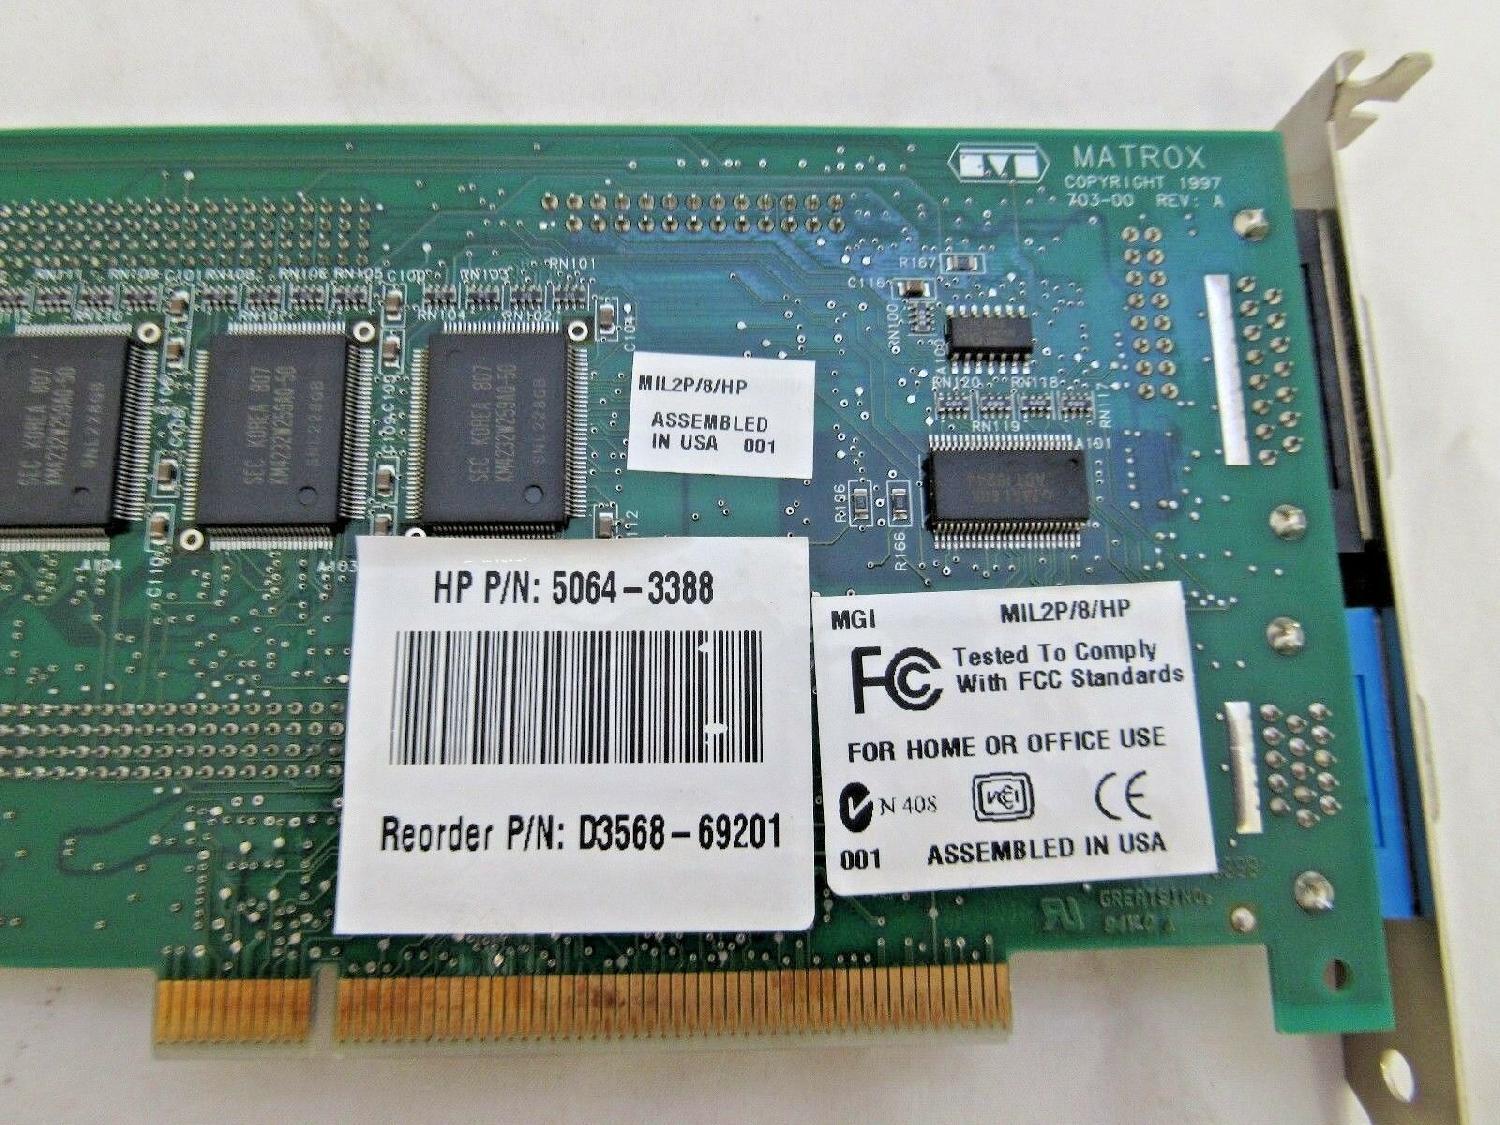 MIL2P/8/HP HEWLETT PACKARD HP MATROX PCI VIDEO CARD MILLENNIUM II 8MB WITH VGA 